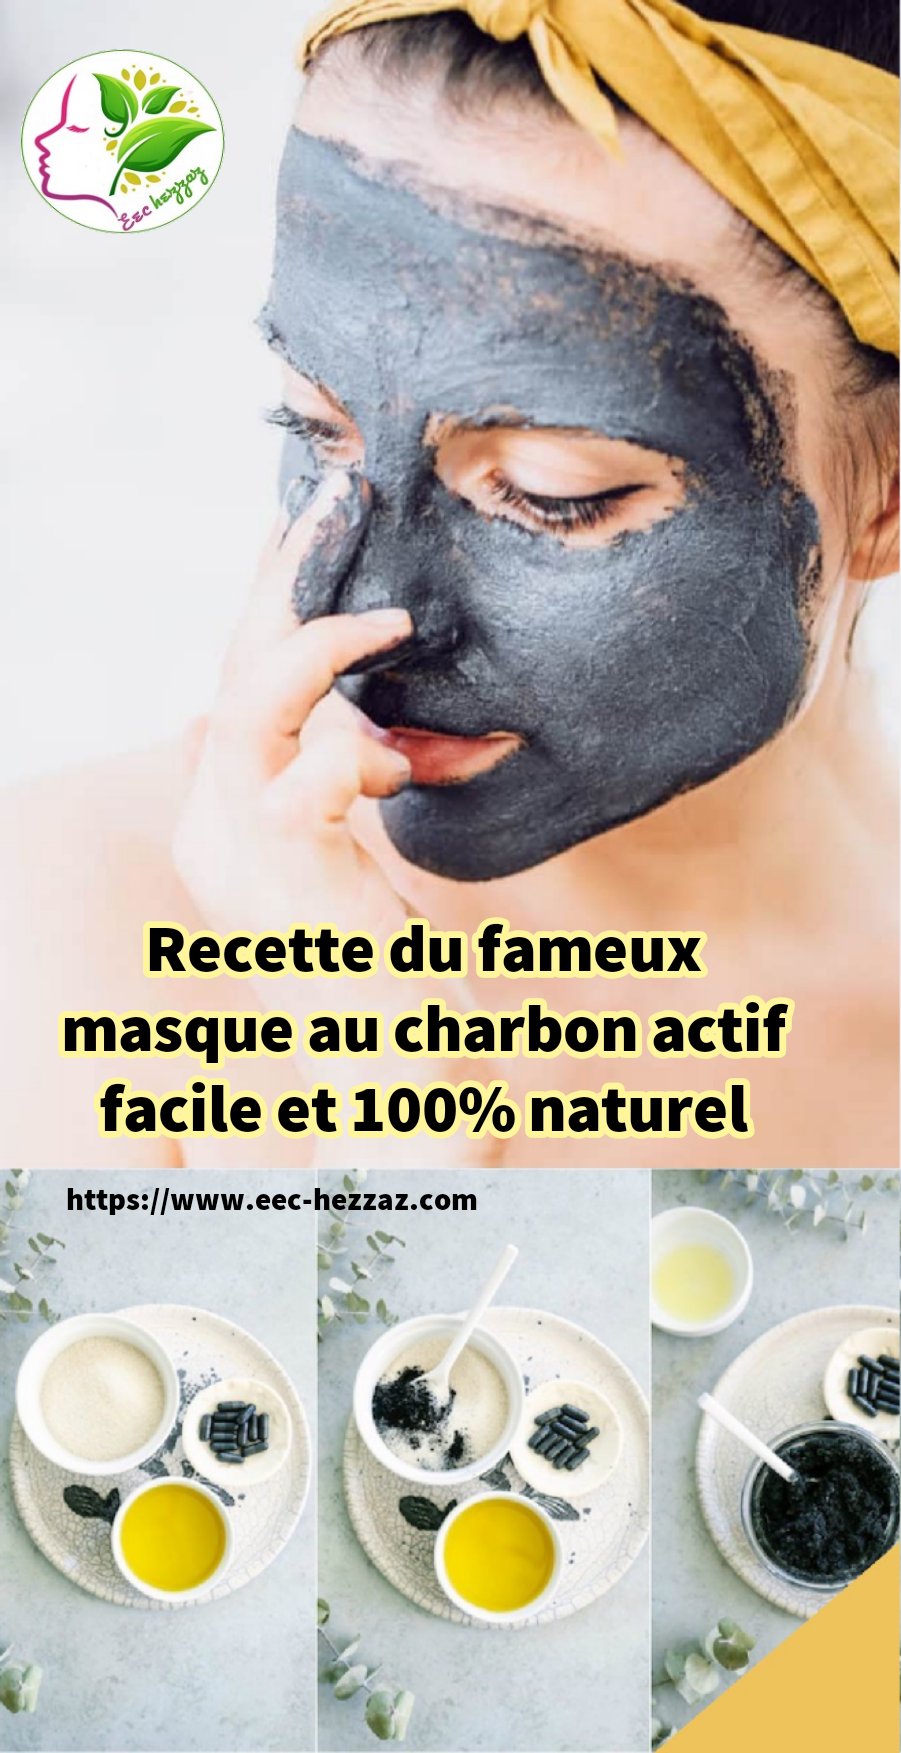 Recette du fameux masque au charbon actif facile et 100% naturel